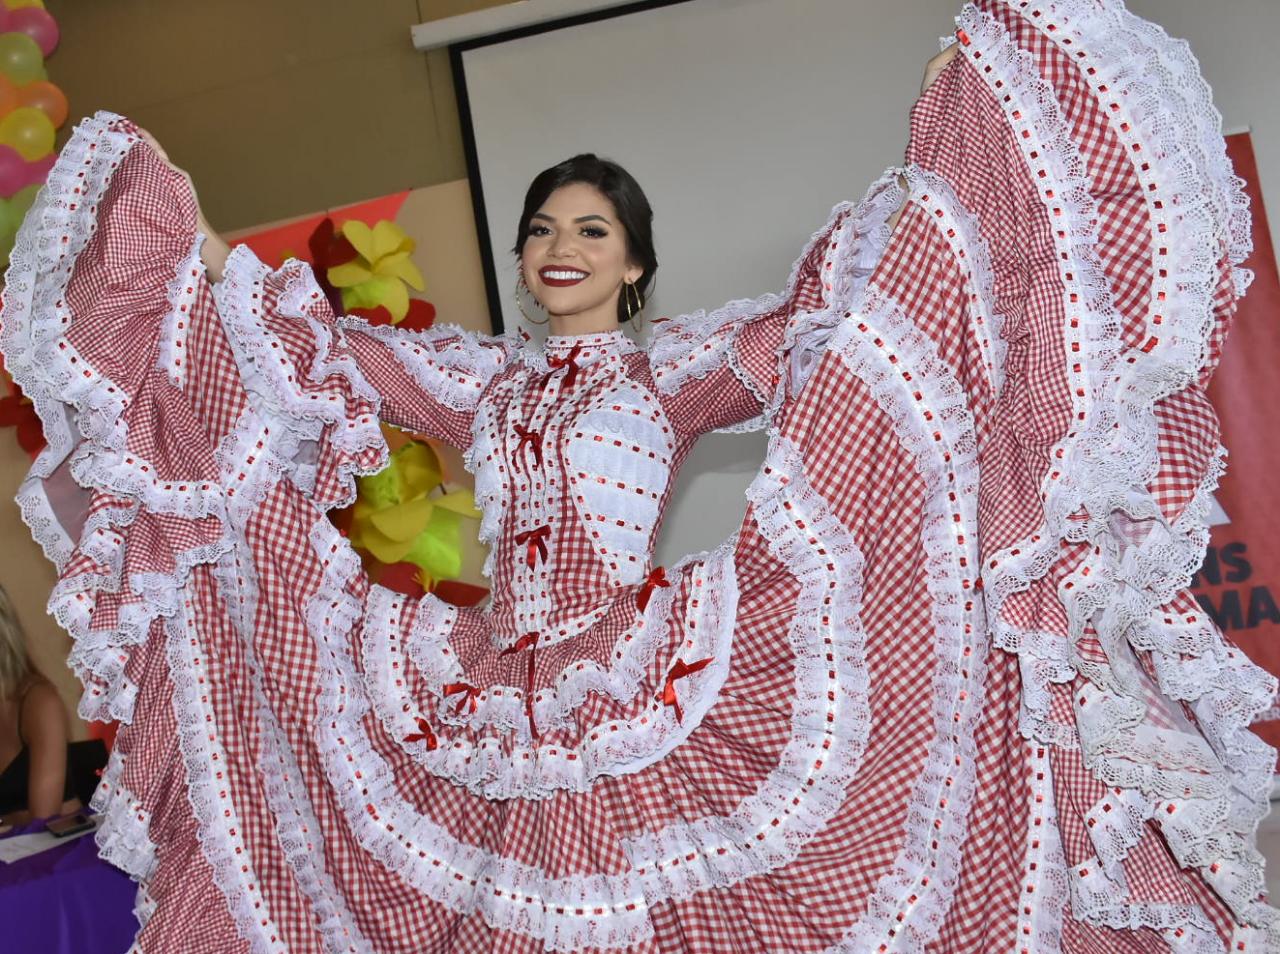 La Reina del Carnaval del Atlántico 2019, Carolina Suárez Gutiérrez.